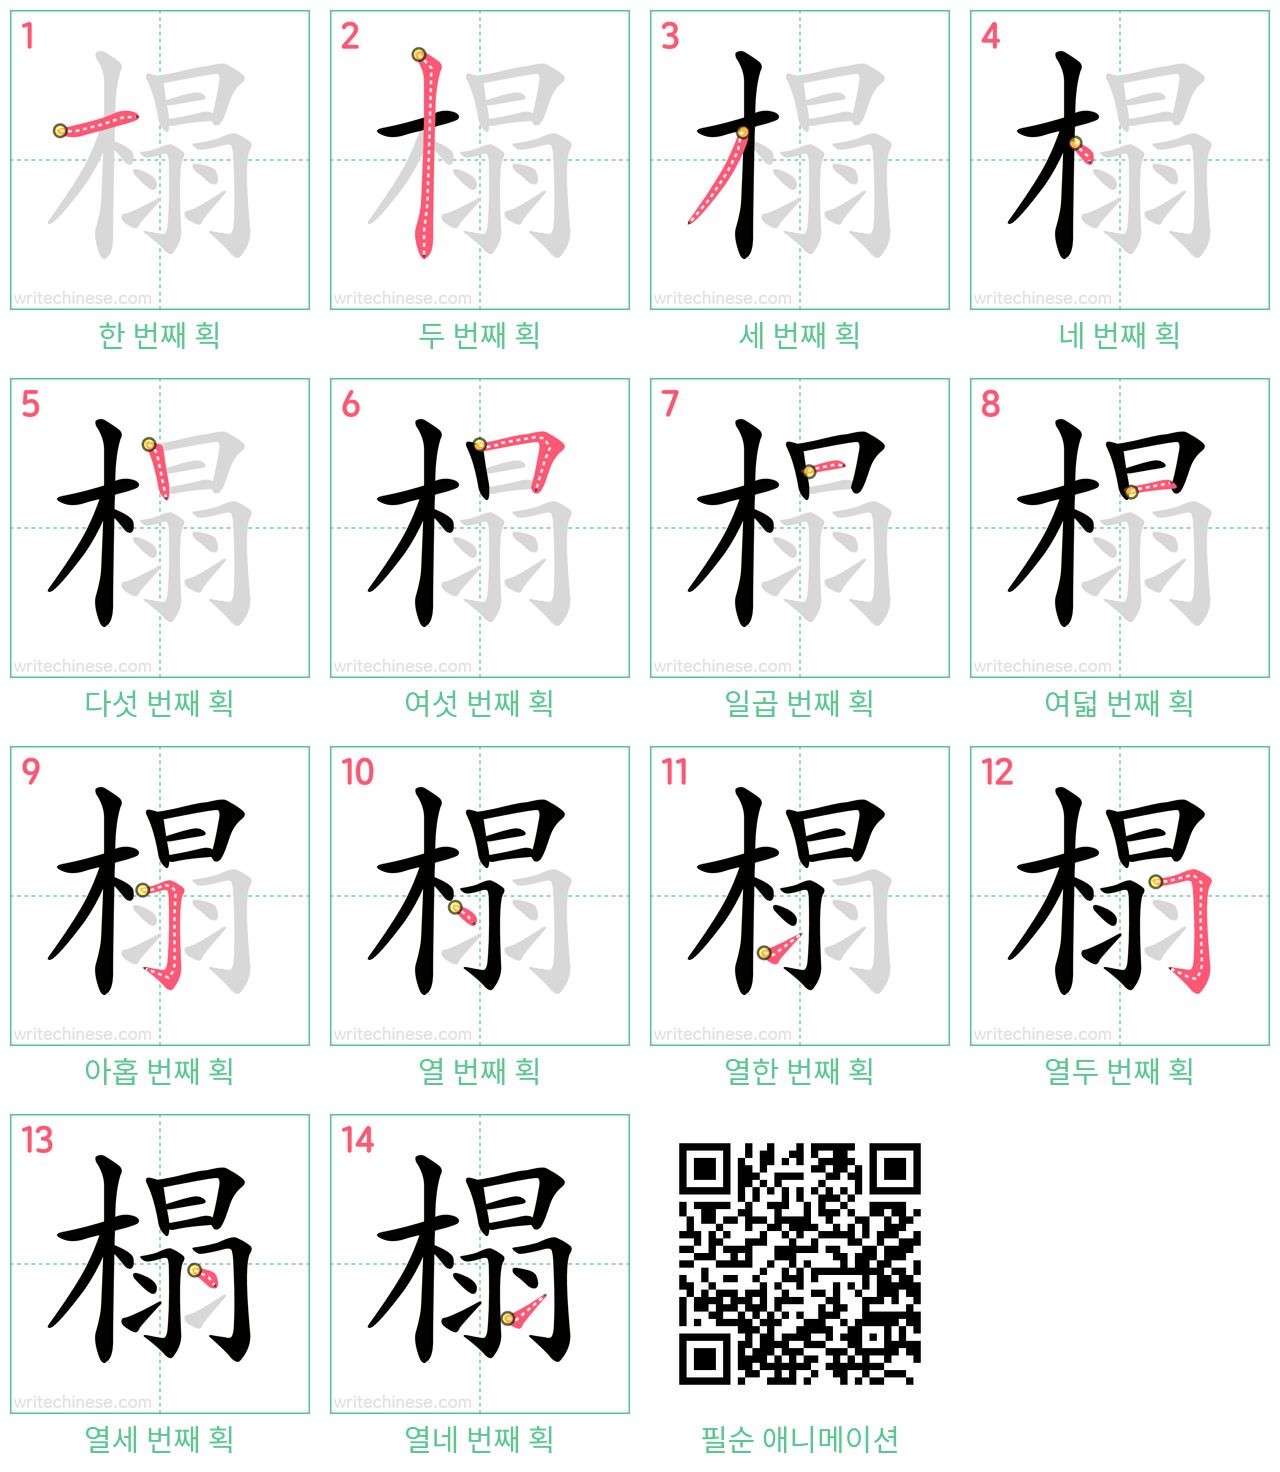 榻 step-by-step stroke order diagrams